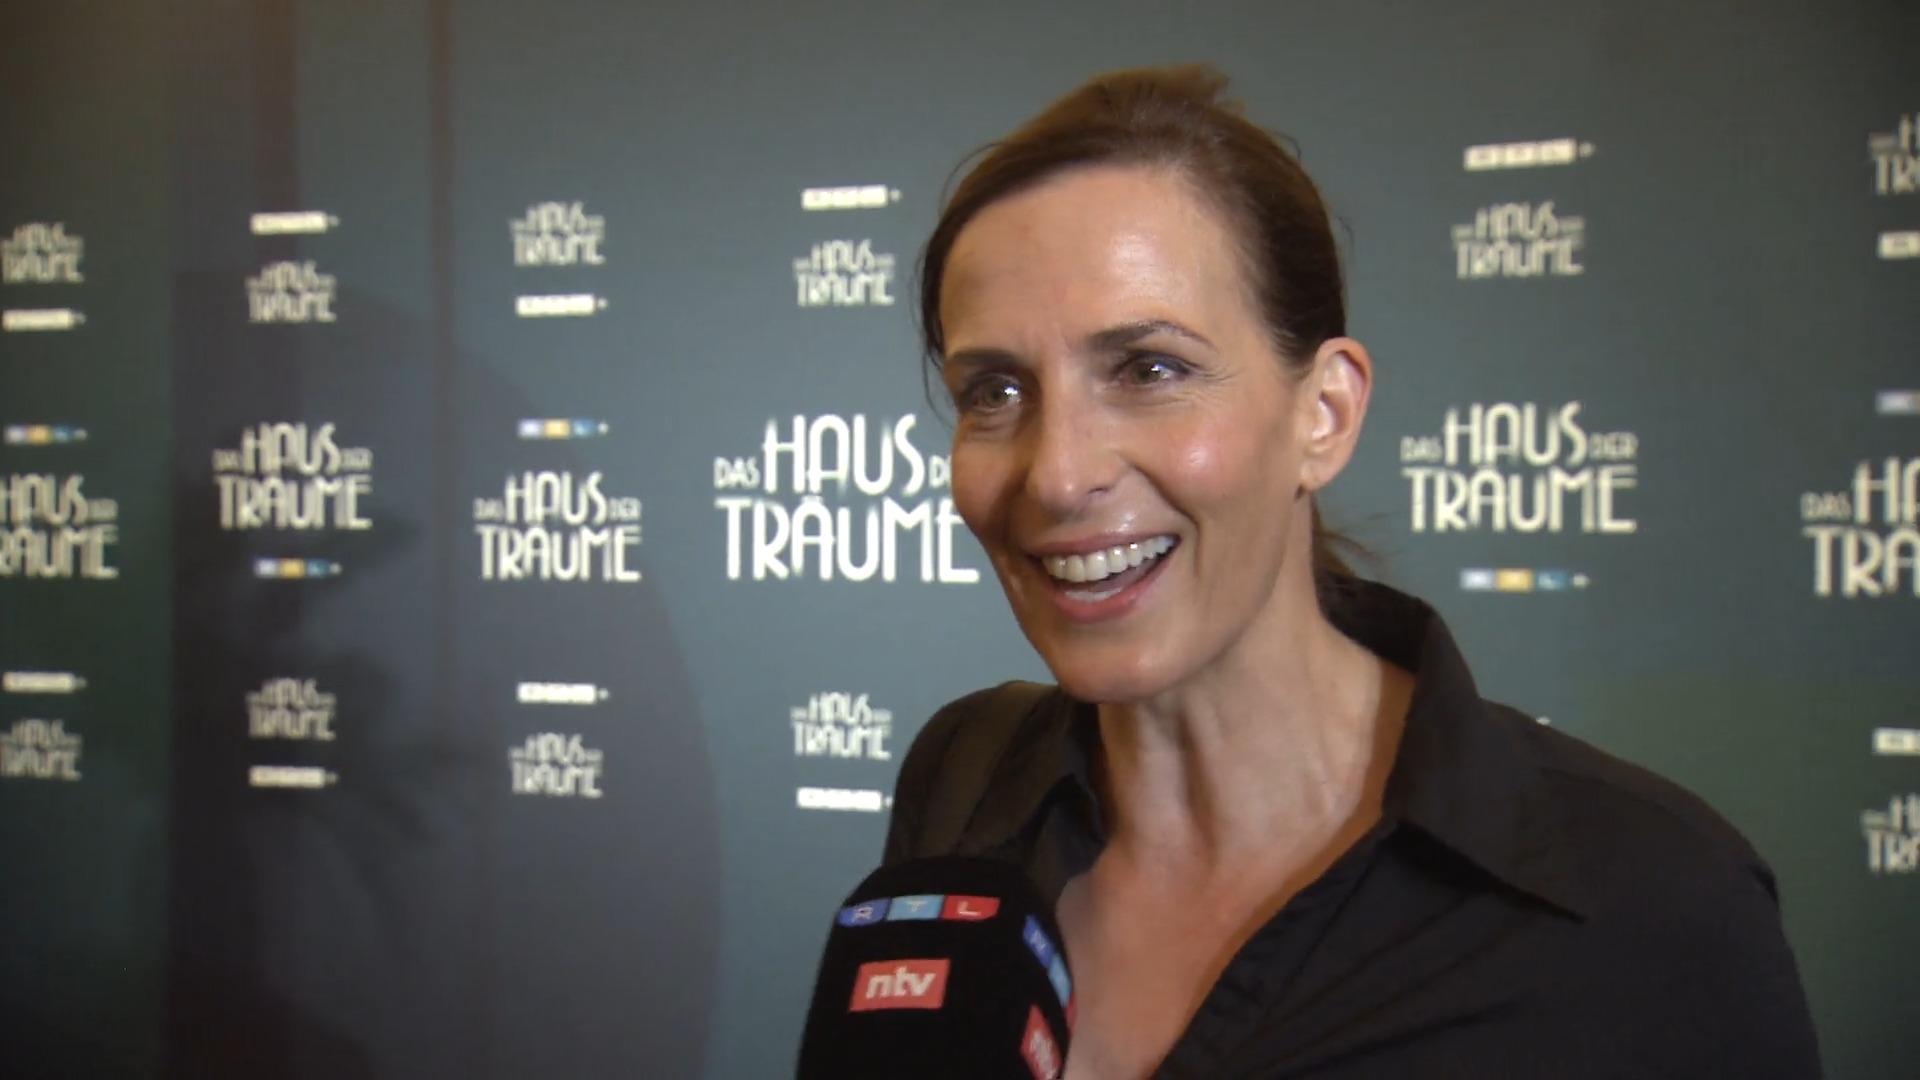 Ulrike Frank findet Veranstaltung nicht Bei RTL-Premiere zu "Haus der Träume"